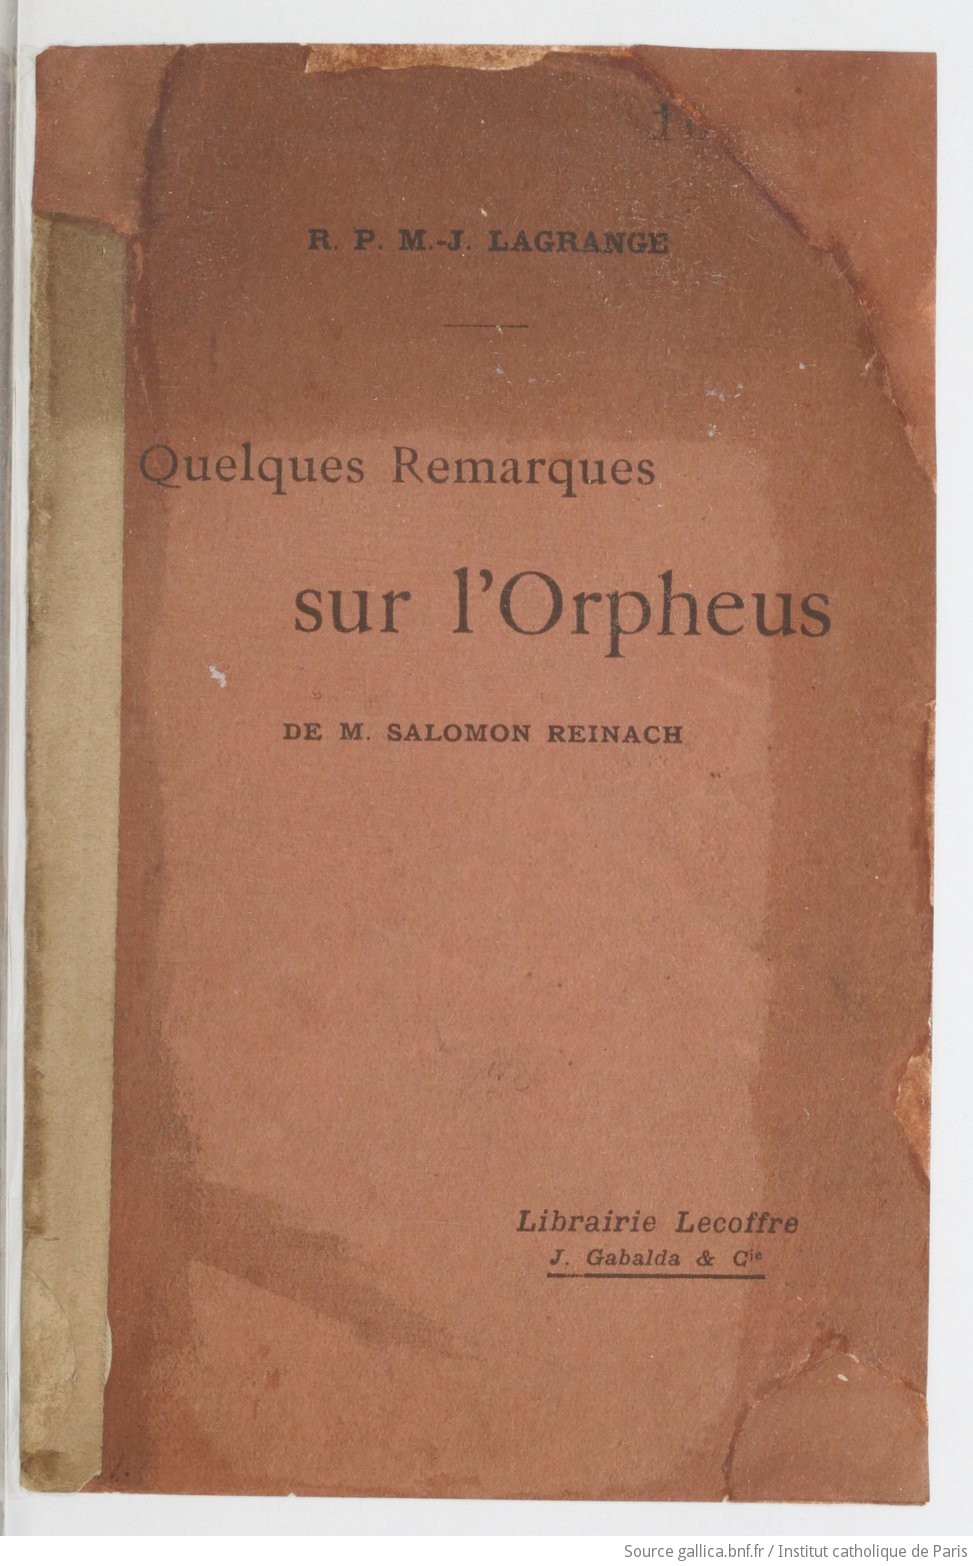 Quelques remarques sur "l'Orpheus" de M. Salomon Reinach / R. P. M.-J. Lagrange